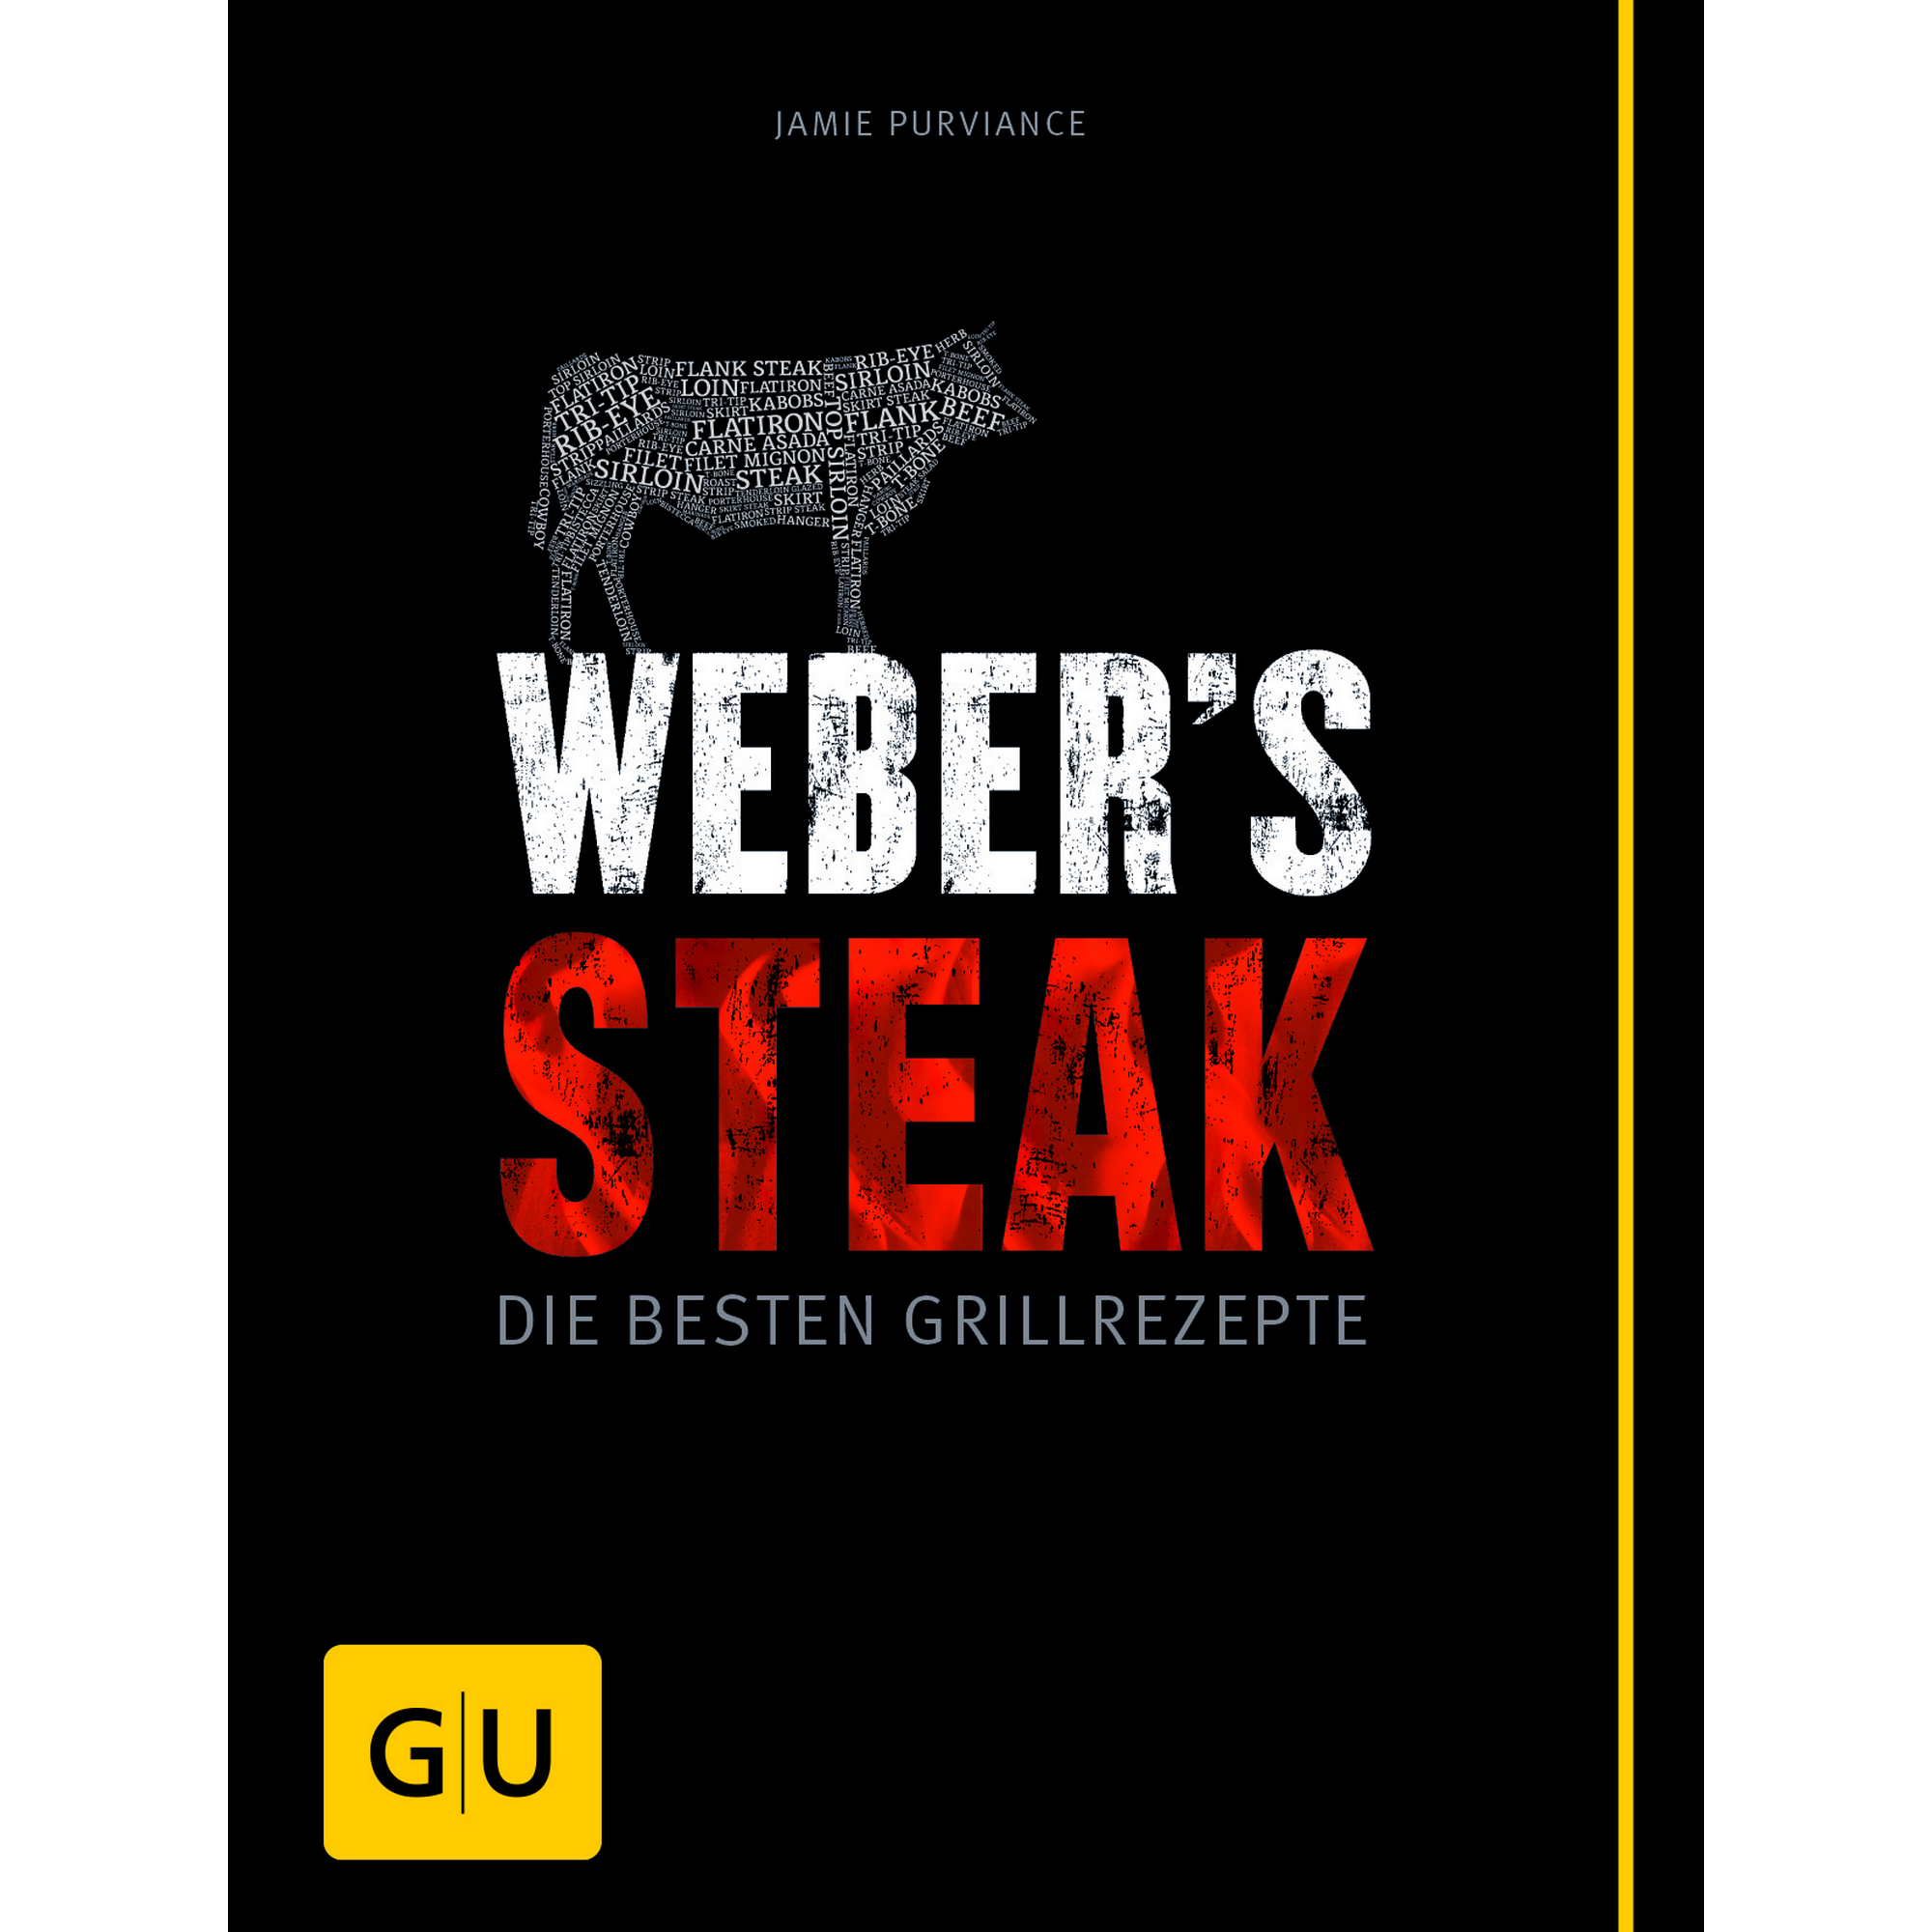 Grillbuch Jamie Purviance 'Weber's Steak: Die besten Grillrezepte' + product picture